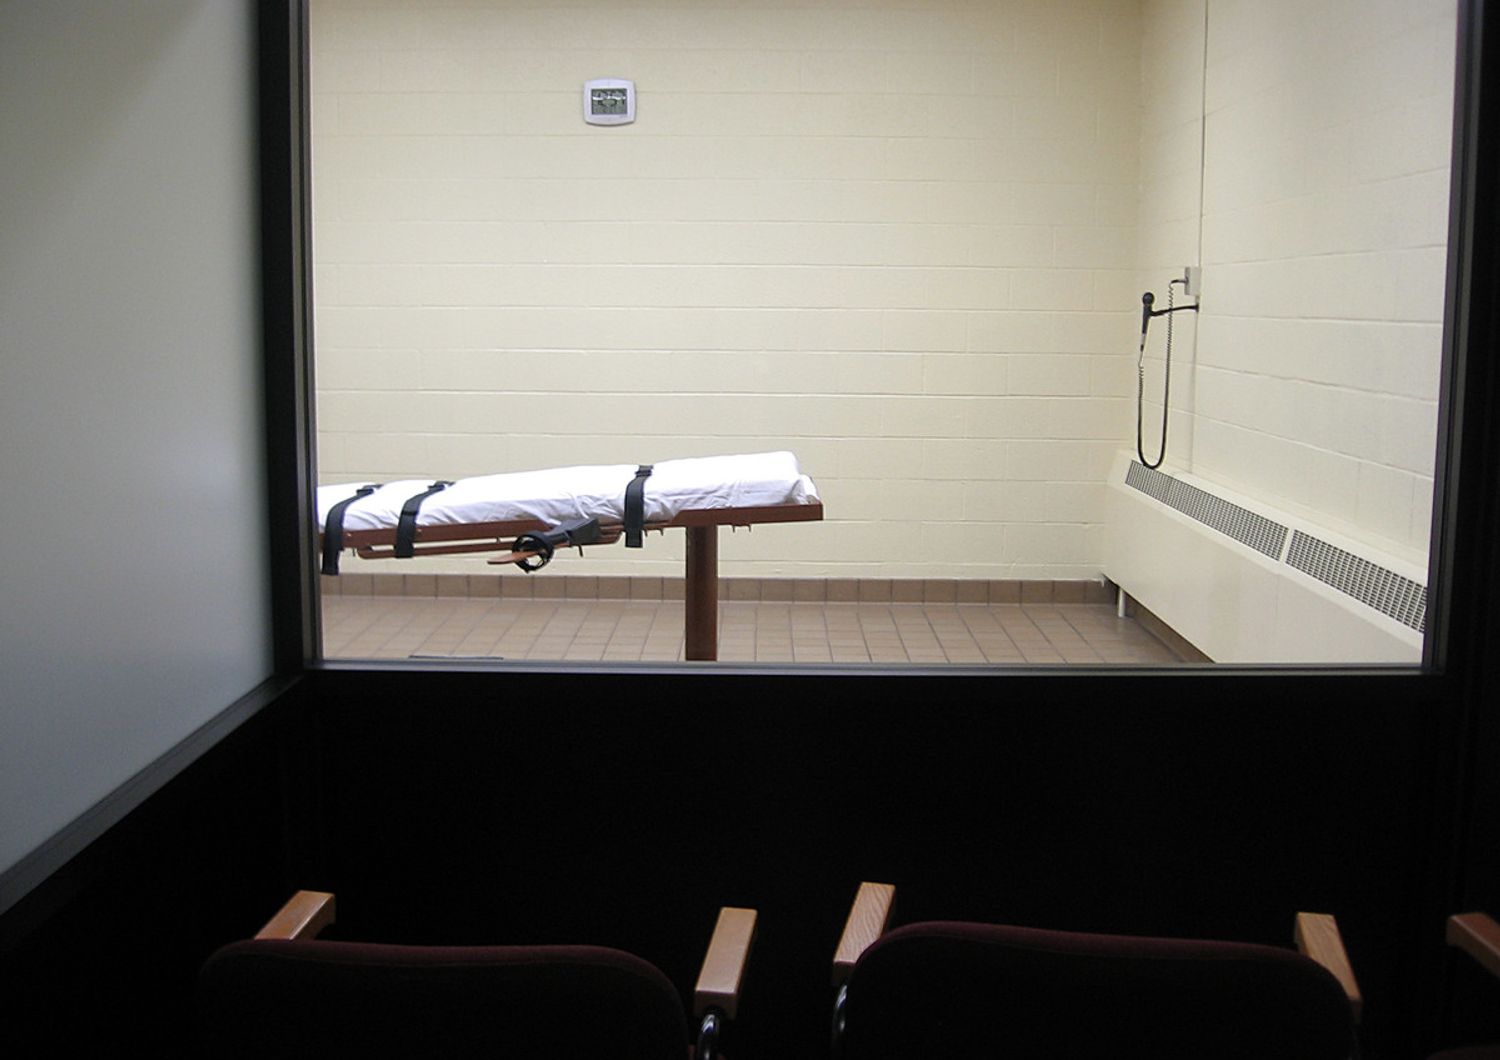 Una camera destinata all'esecuzione capitale in un carcere degli Stati Uniti&nbsp;